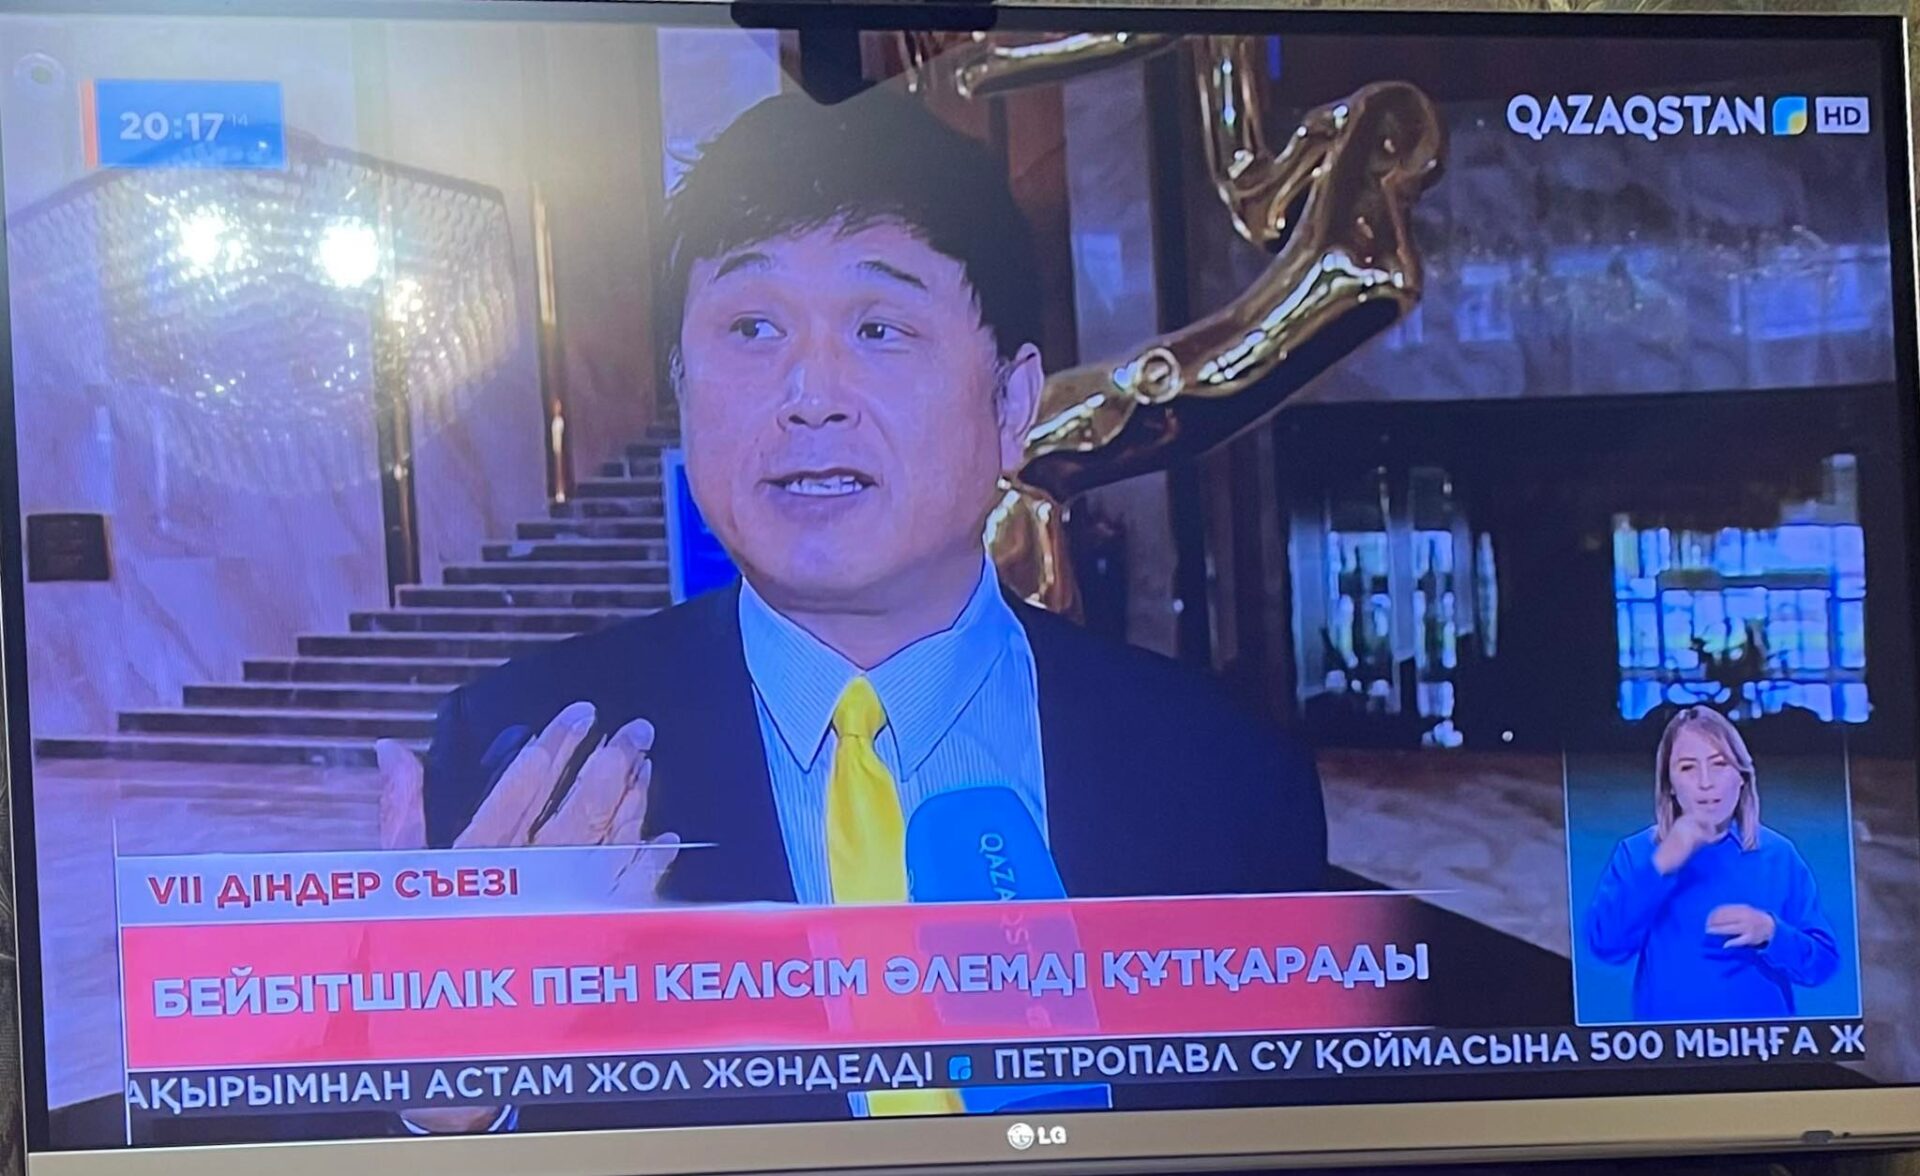 Qazakhstan TV